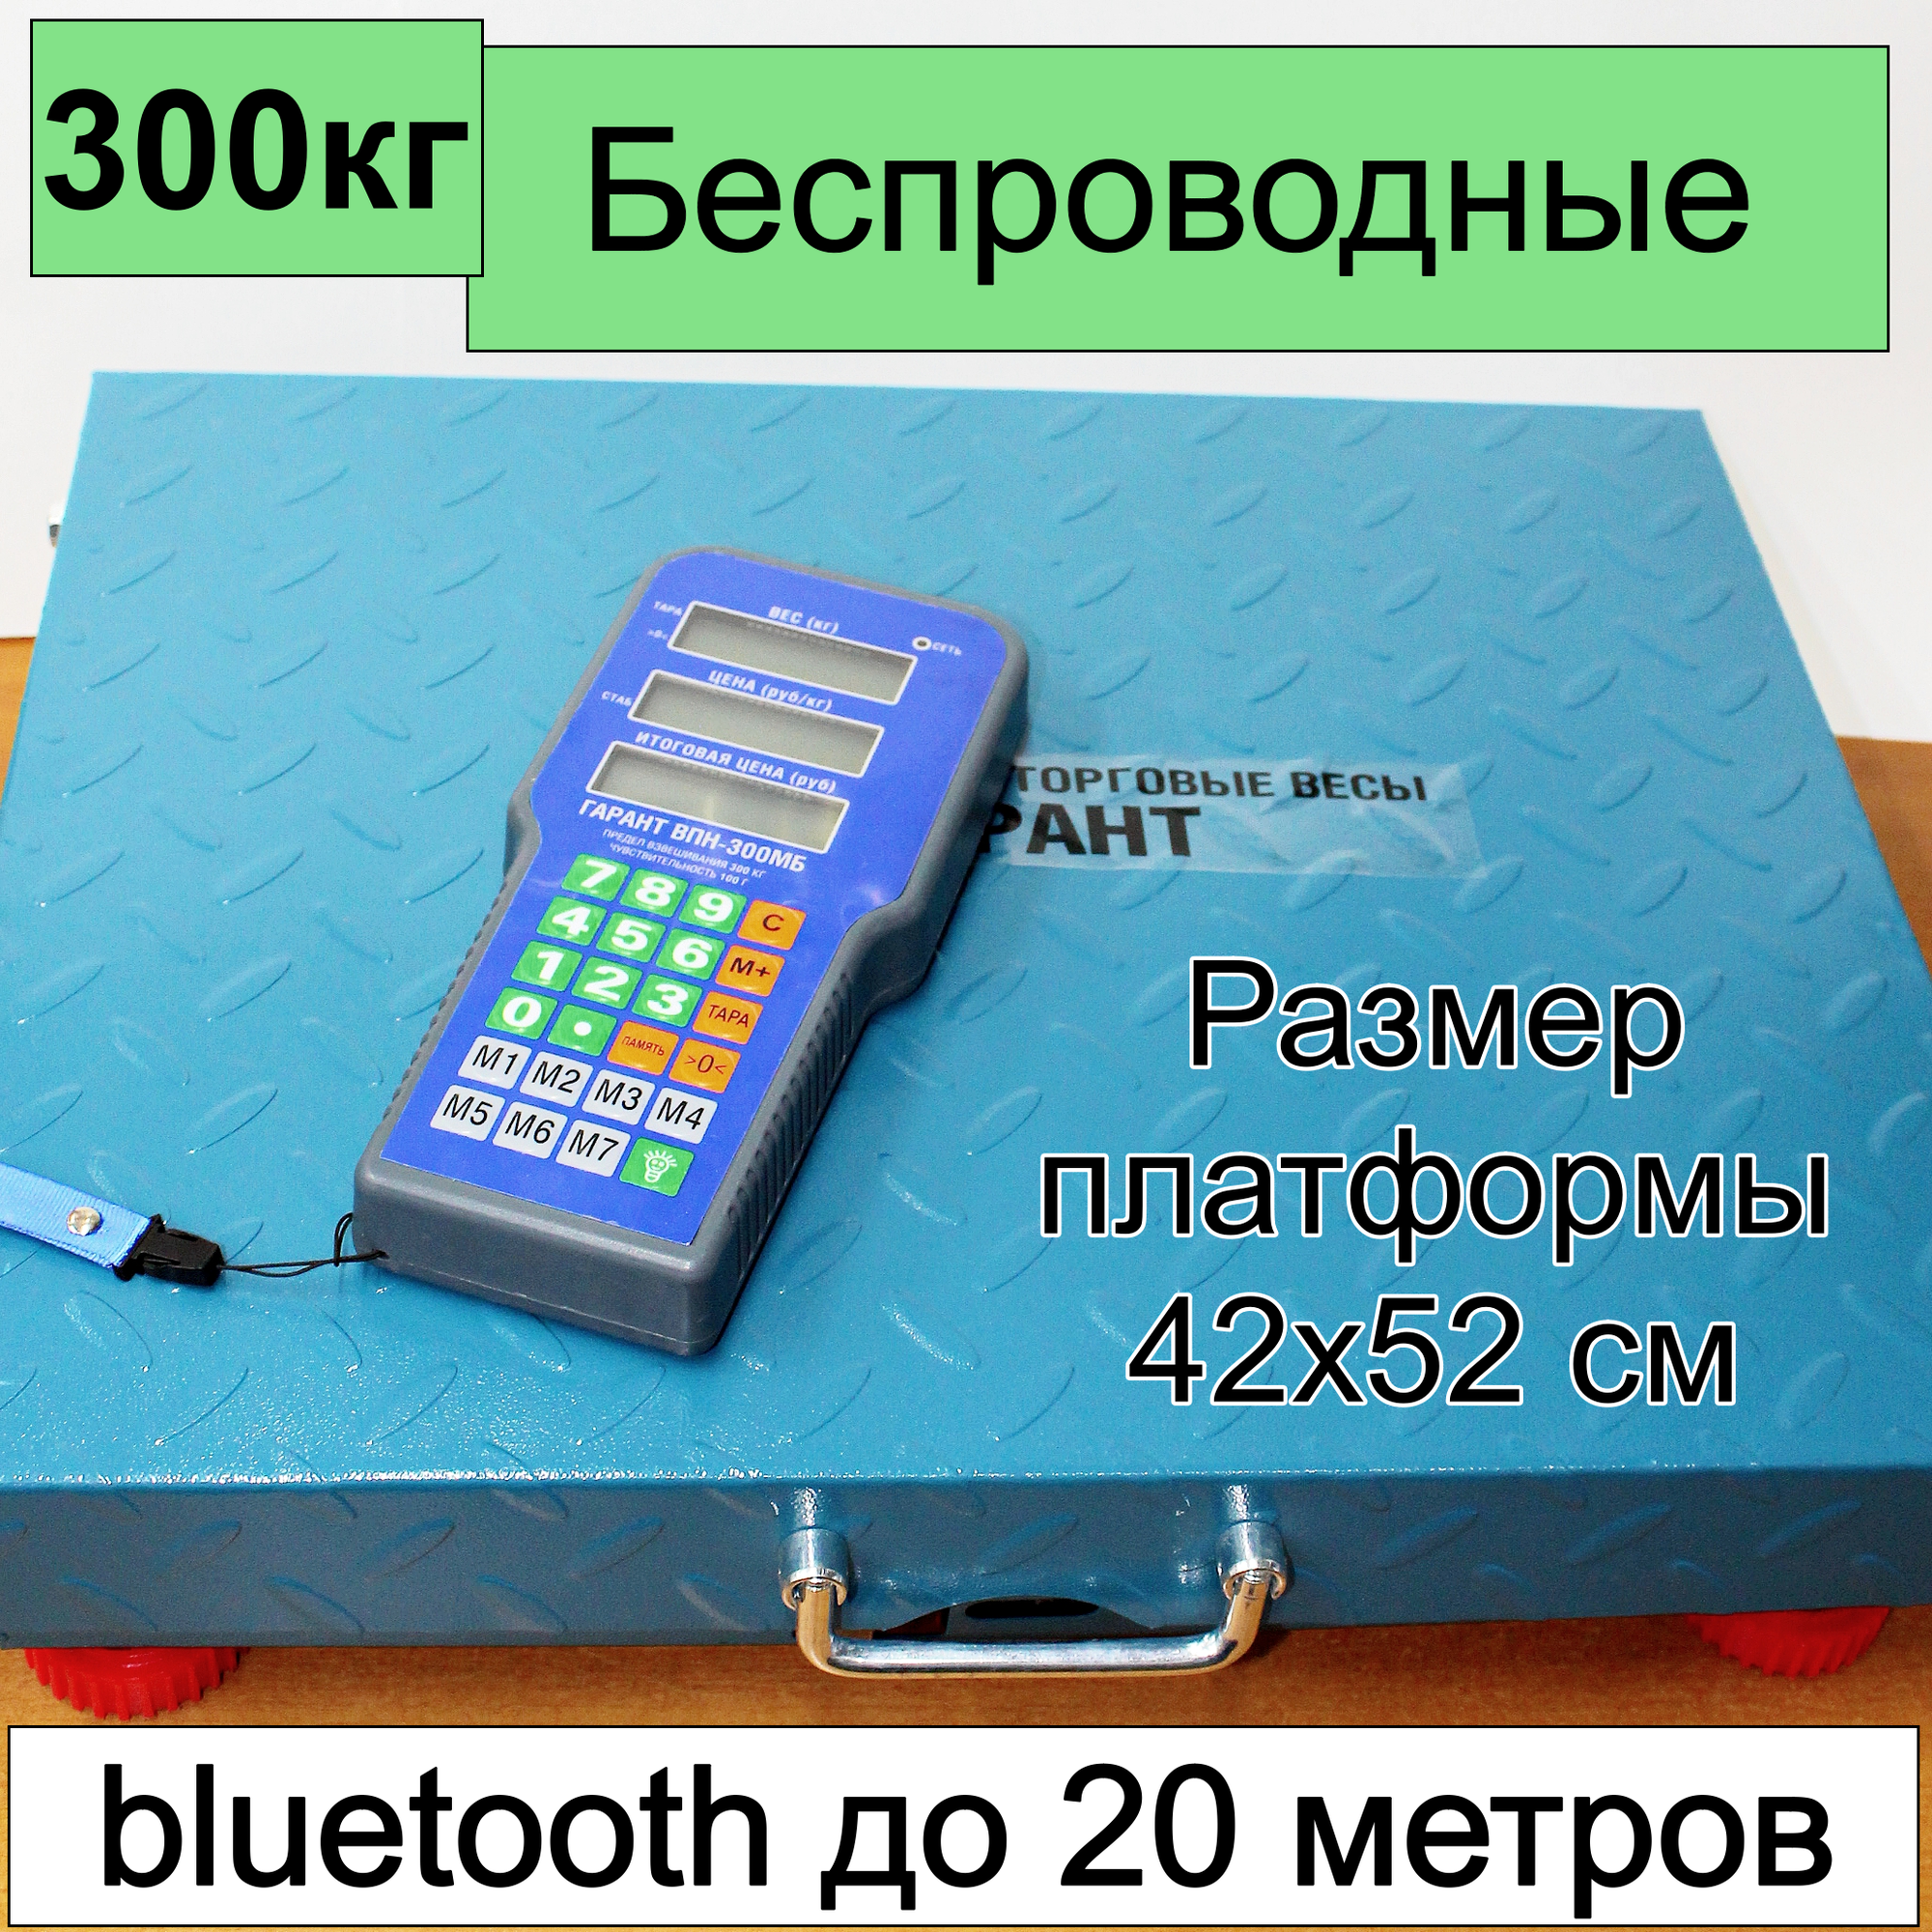 Весы торговые беспроводные Гарант ВПН-300МБ до 300 кг